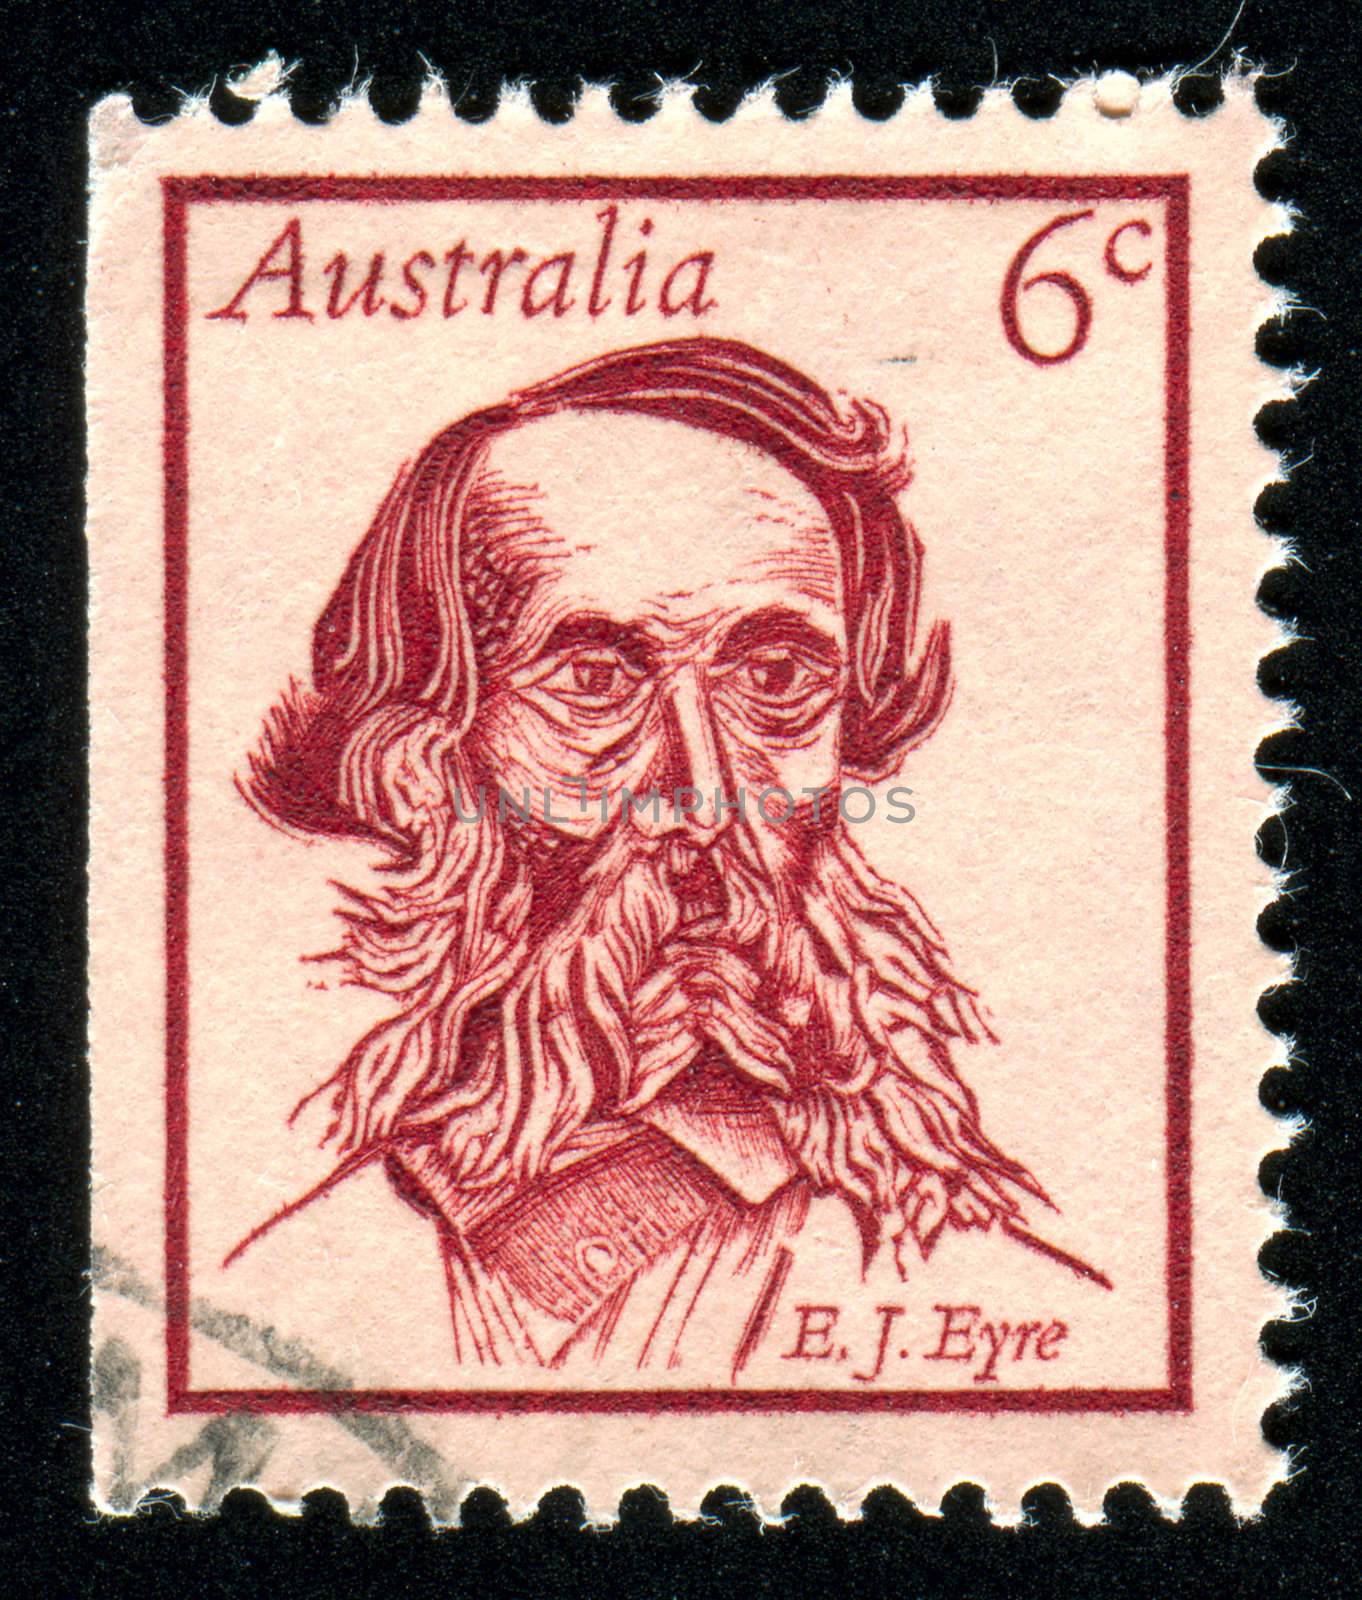 AUSTRALIA - CIRCA 1970: stamp printed by Australia, shows Edward John Eyre, circa 1970